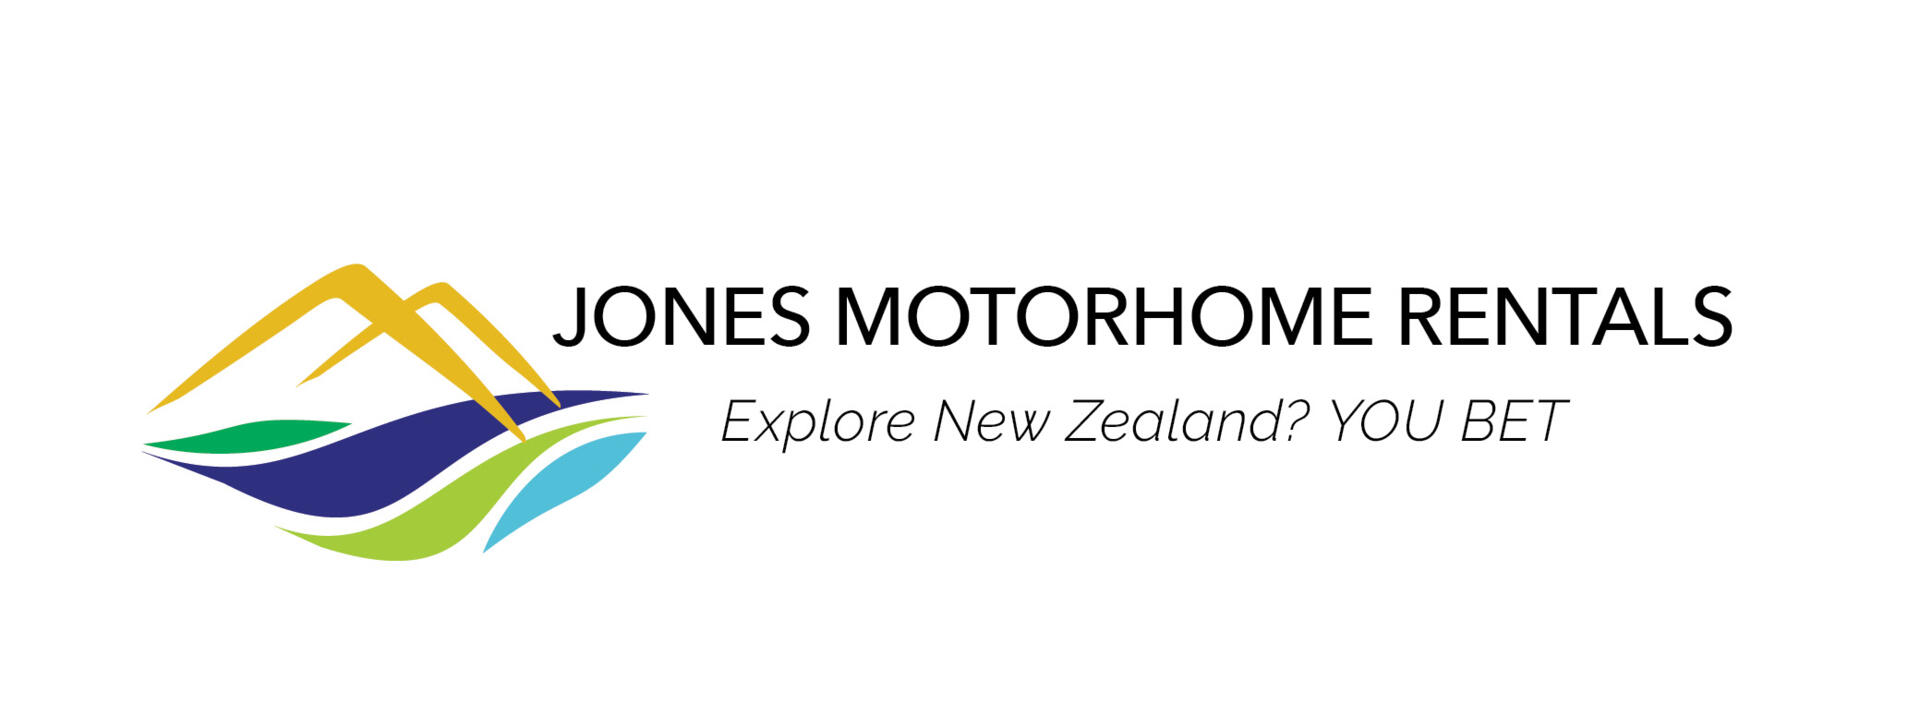 jones-motorhome-rentals-logo-lc.jpg